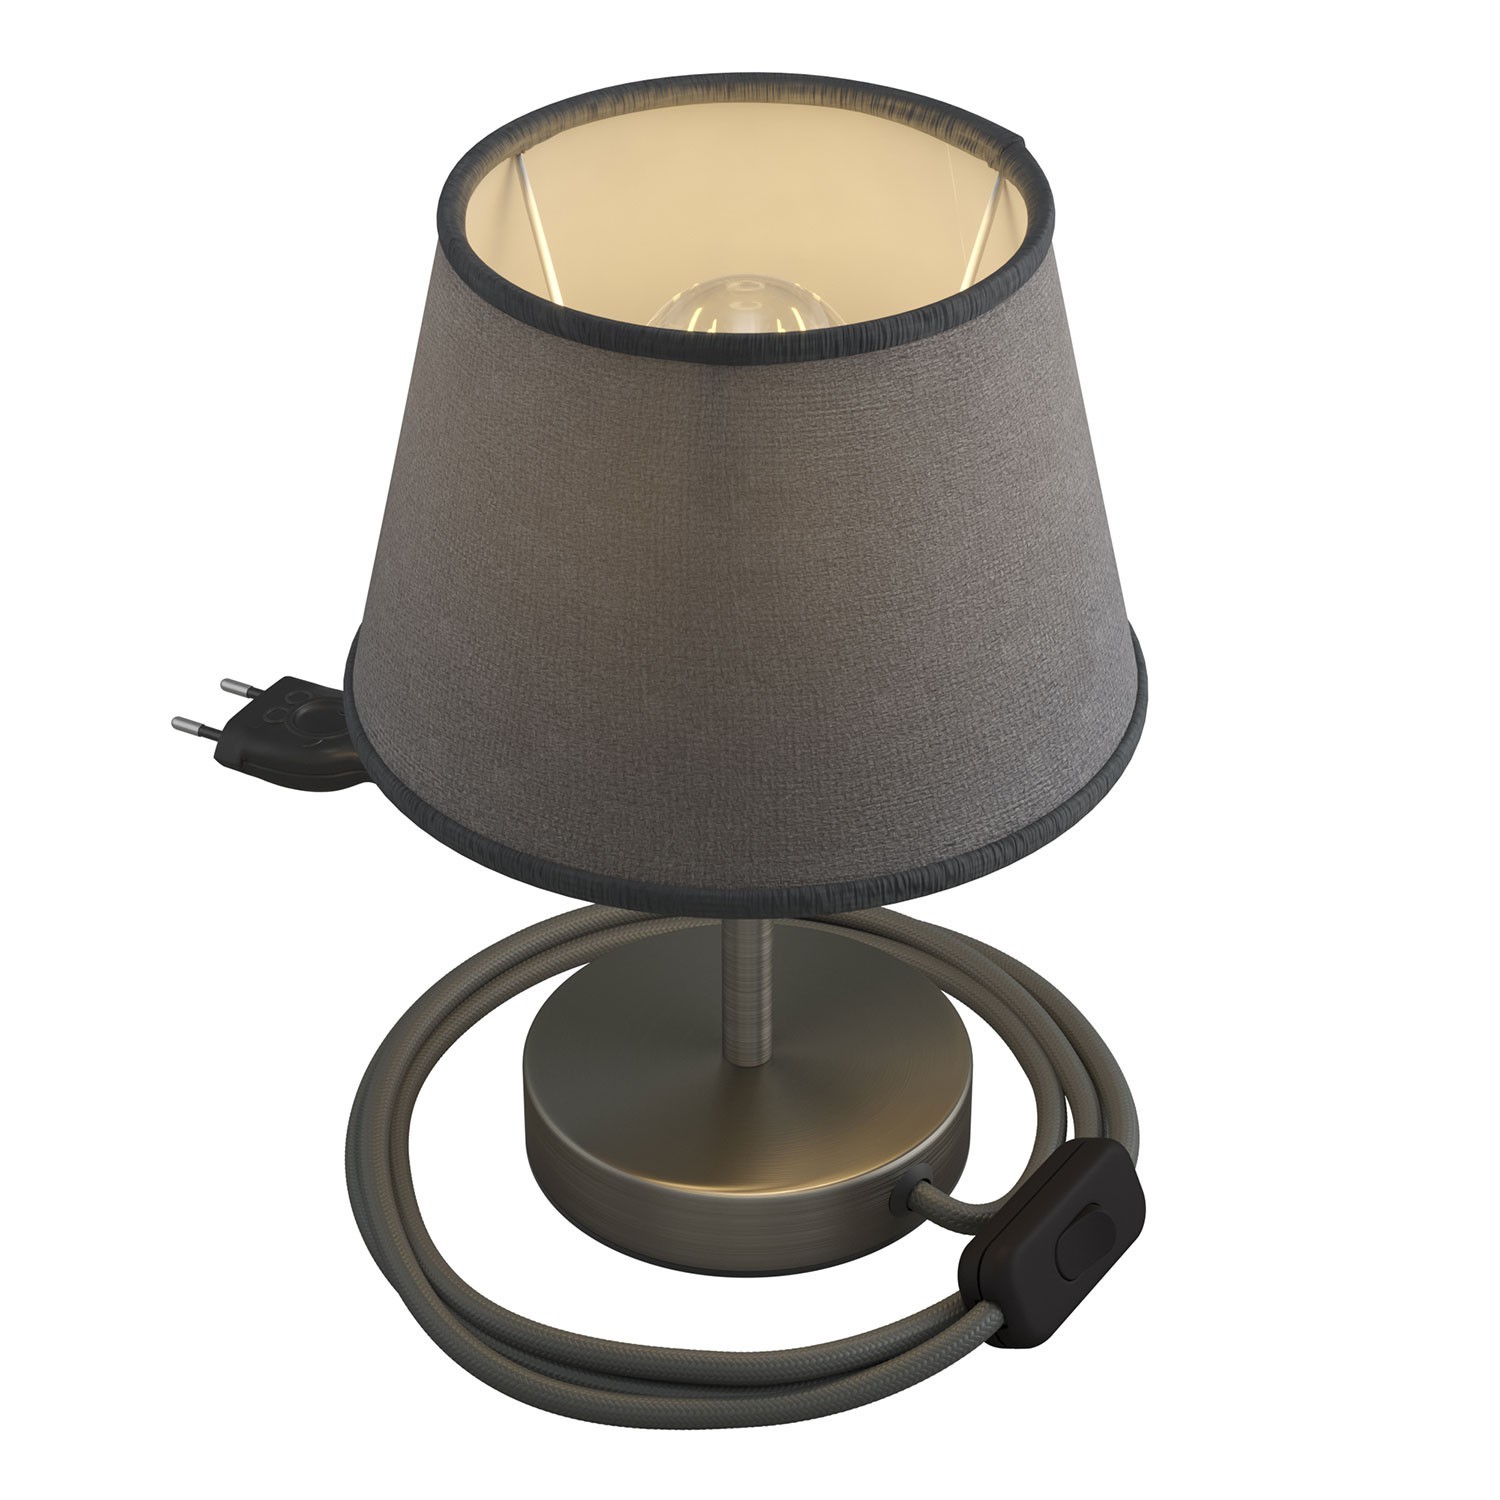 Alzaluce met Impero-lampenkap, metalen tafellamp met stekker, snoer en schakelaar